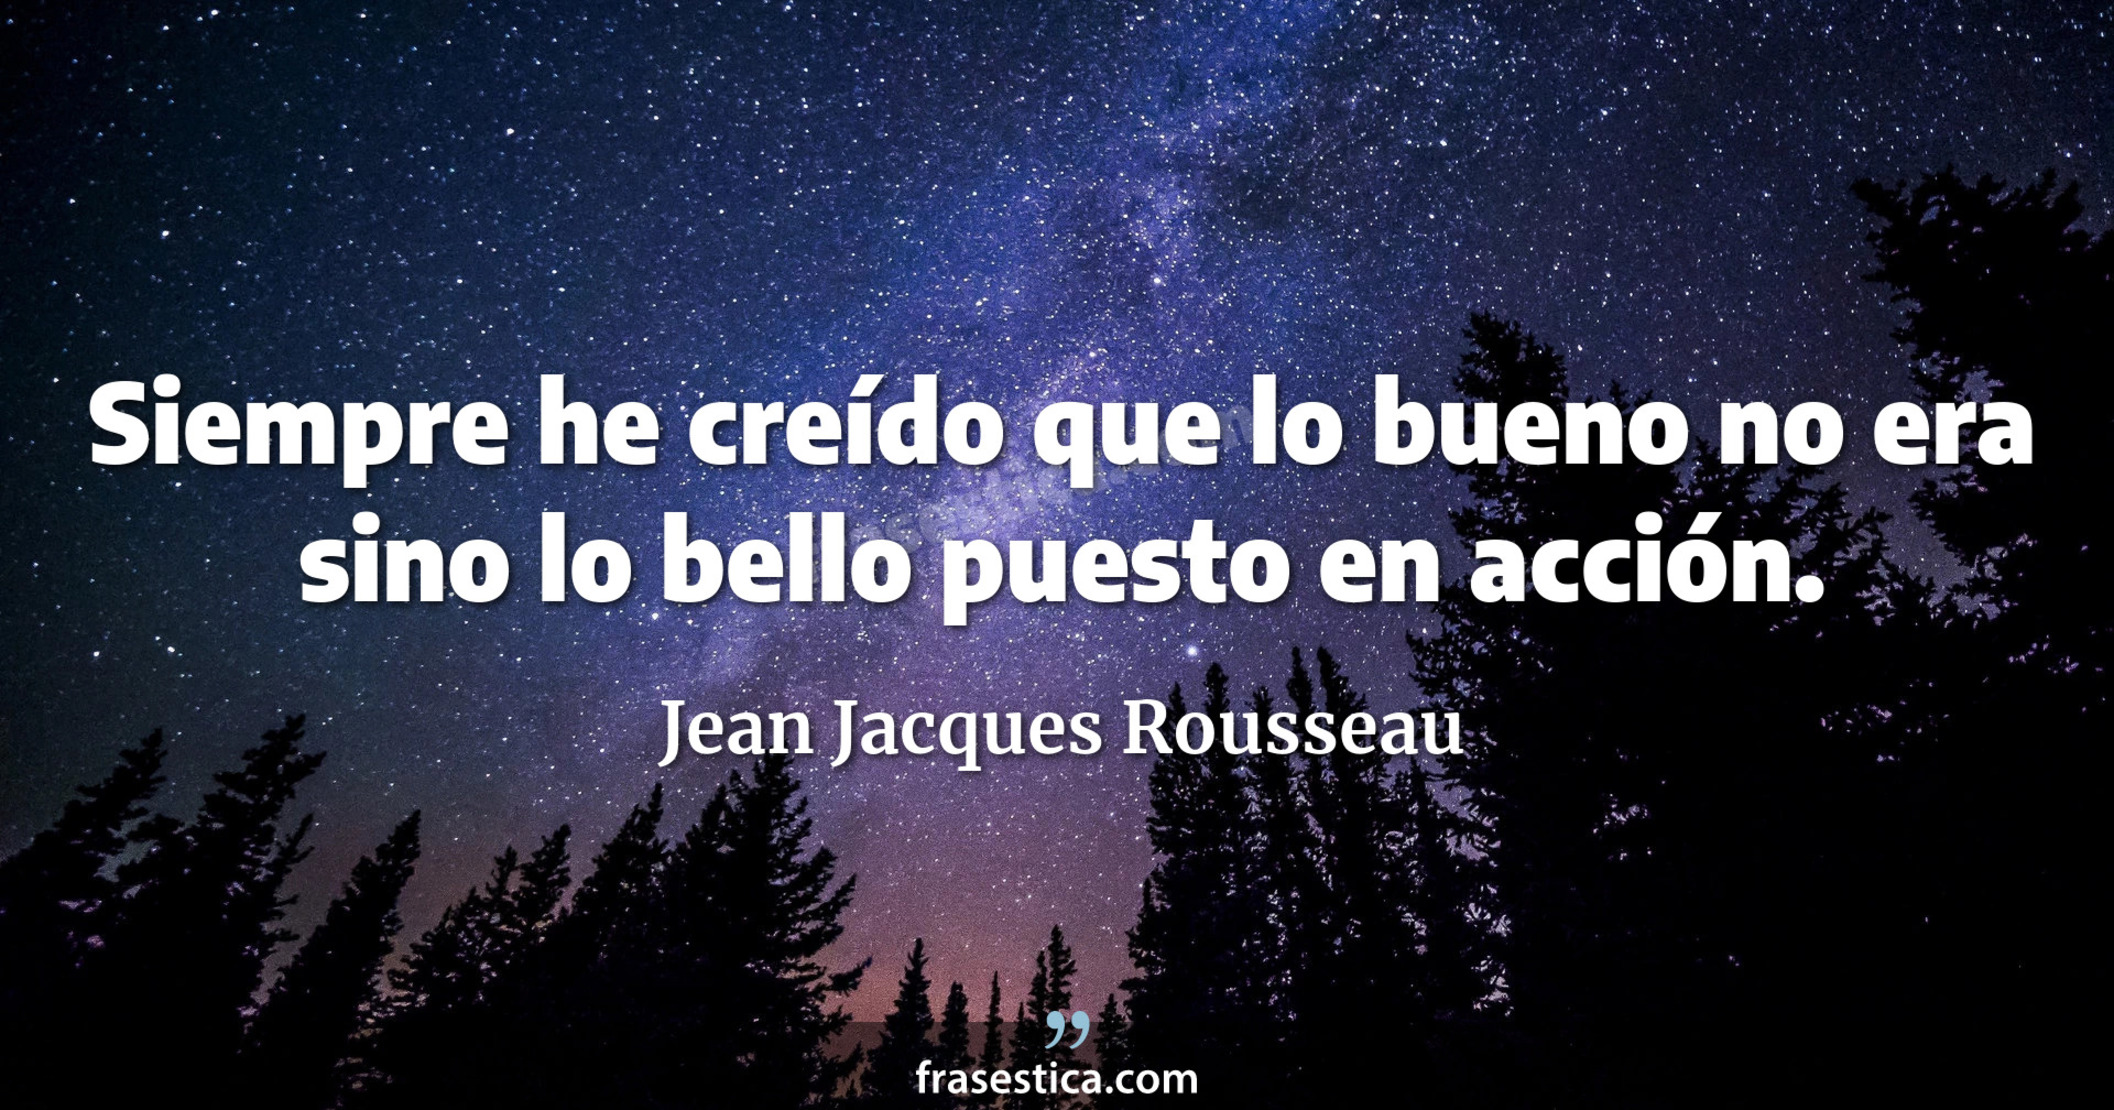 Siempre he creído que lo bueno no era sino lo bello puesto en acción. - Jean Jacques Rousseau